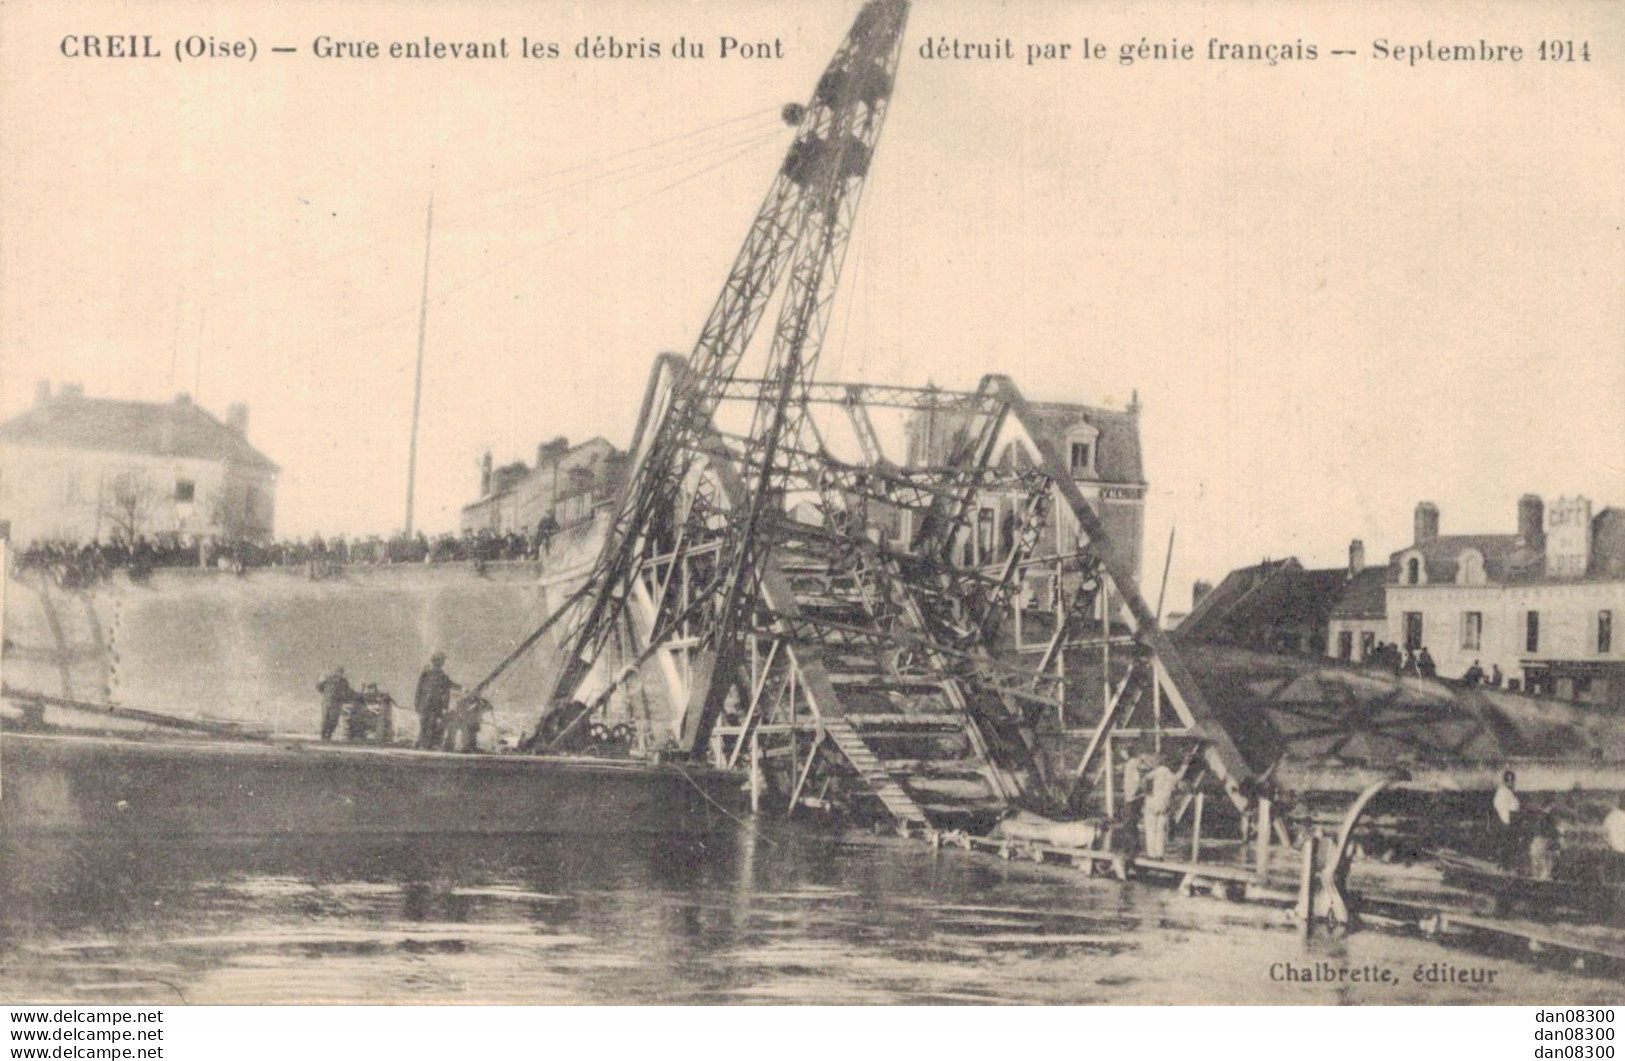 60 CREIL GRUE ENLEVANT LES DEBRIS DU PONT DETRUIT PAR LE GENIE FRANCAIS SEPTEMBRE 1914 - Guerra 1914-18